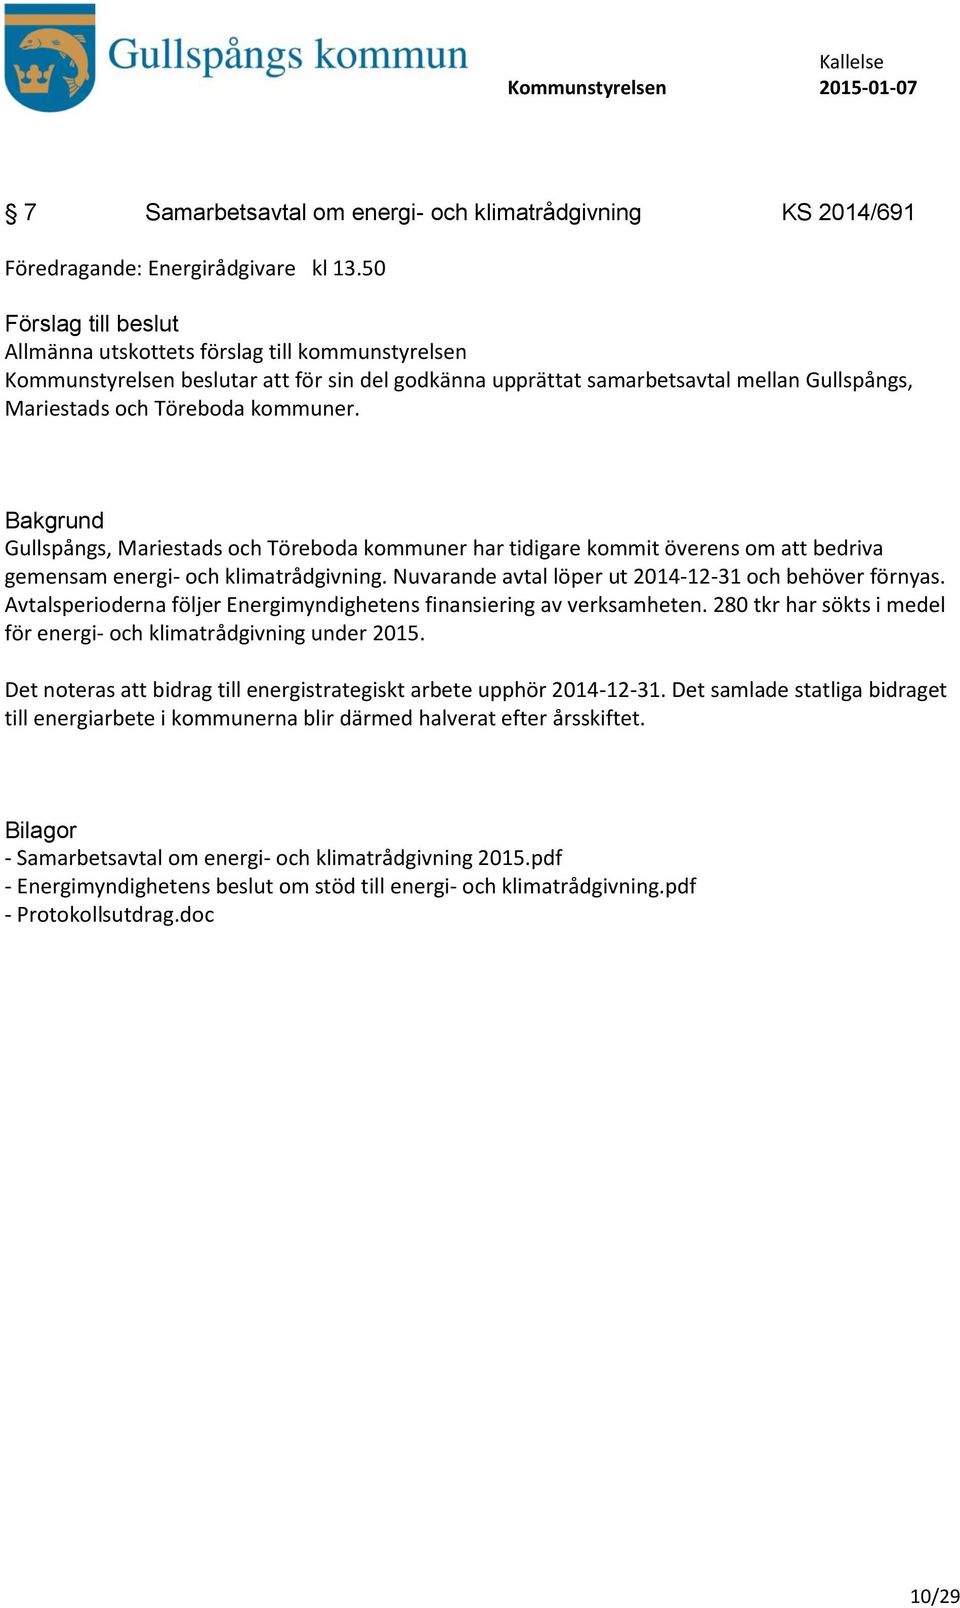 Gullspångs, Mariestads och Töreboda kommuner har tidigare kommit överens om att bedriva gemensam energi- och klimatrådgivning. Nuvarande avtal löper ut 2014-12-31 och behöver förnyas.